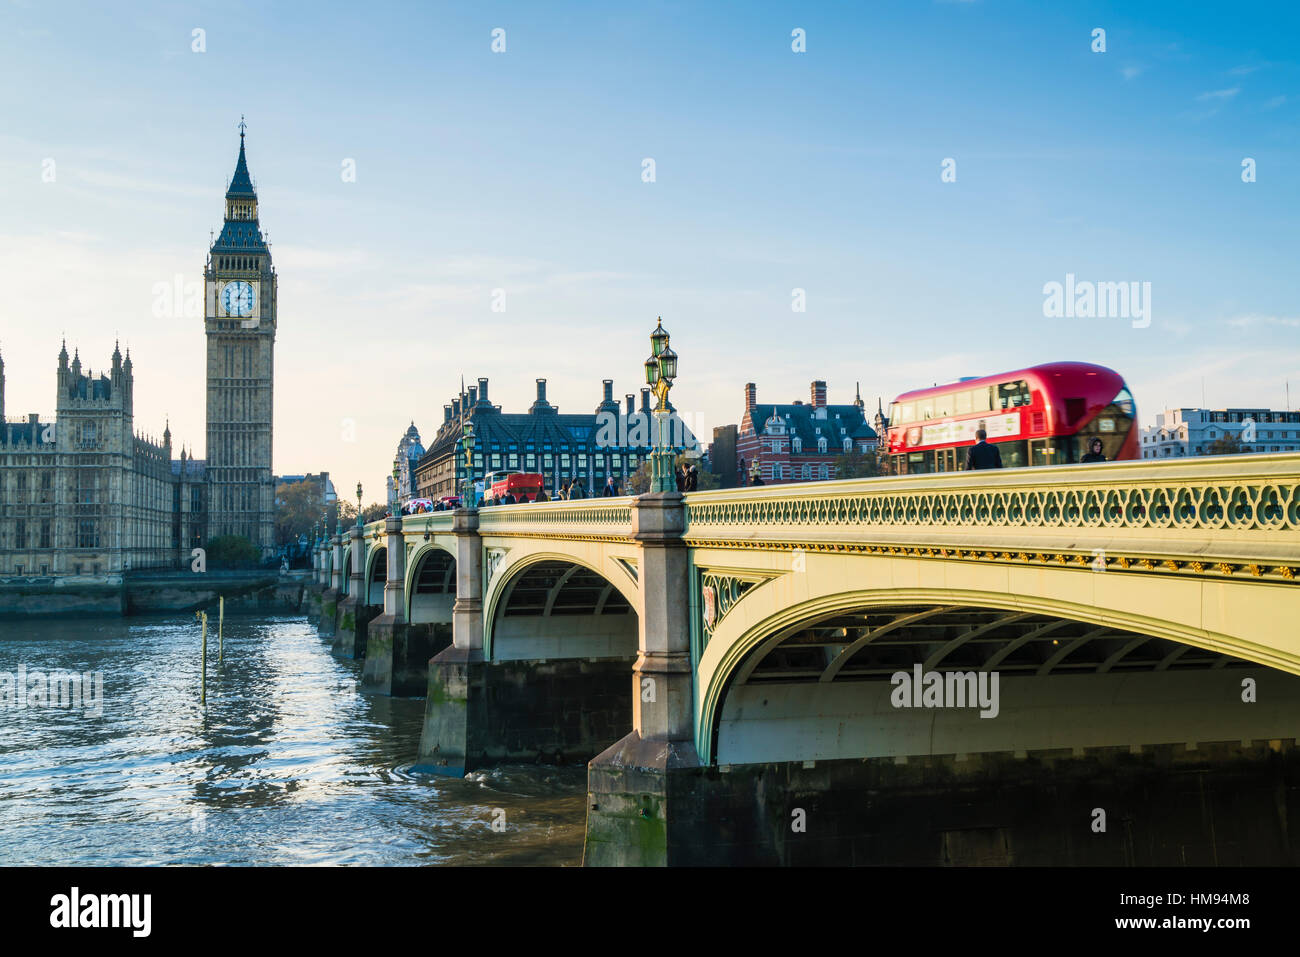 Red bus traversant le pont de Westminster vers Big Ben et les chambres du Parlement, Londres, Angleterre, Royaume-Uni Banque D'Images